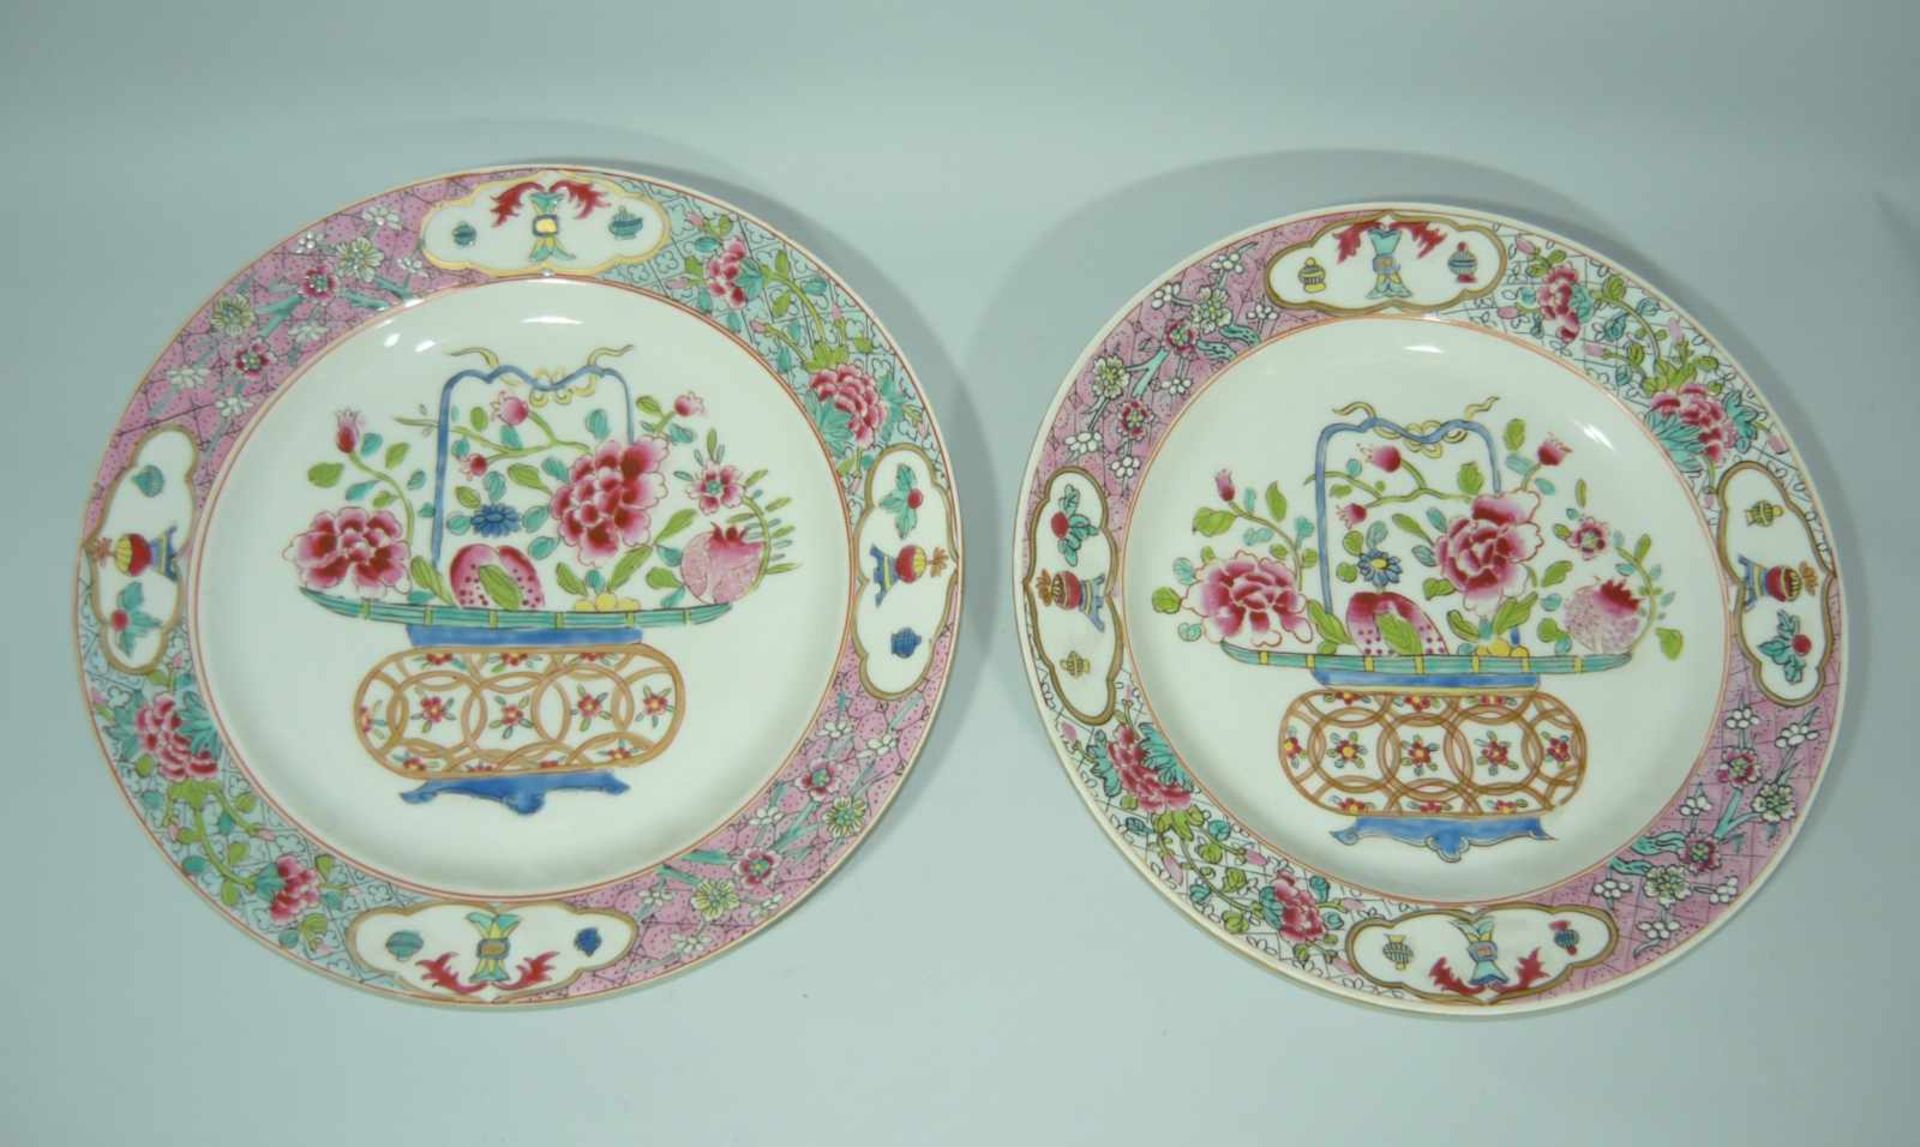 Zwei chinesische Teller mit qualitätvoller Bemalung. Wohl vor o. um 1900. DM je ca. 24 cm.Two